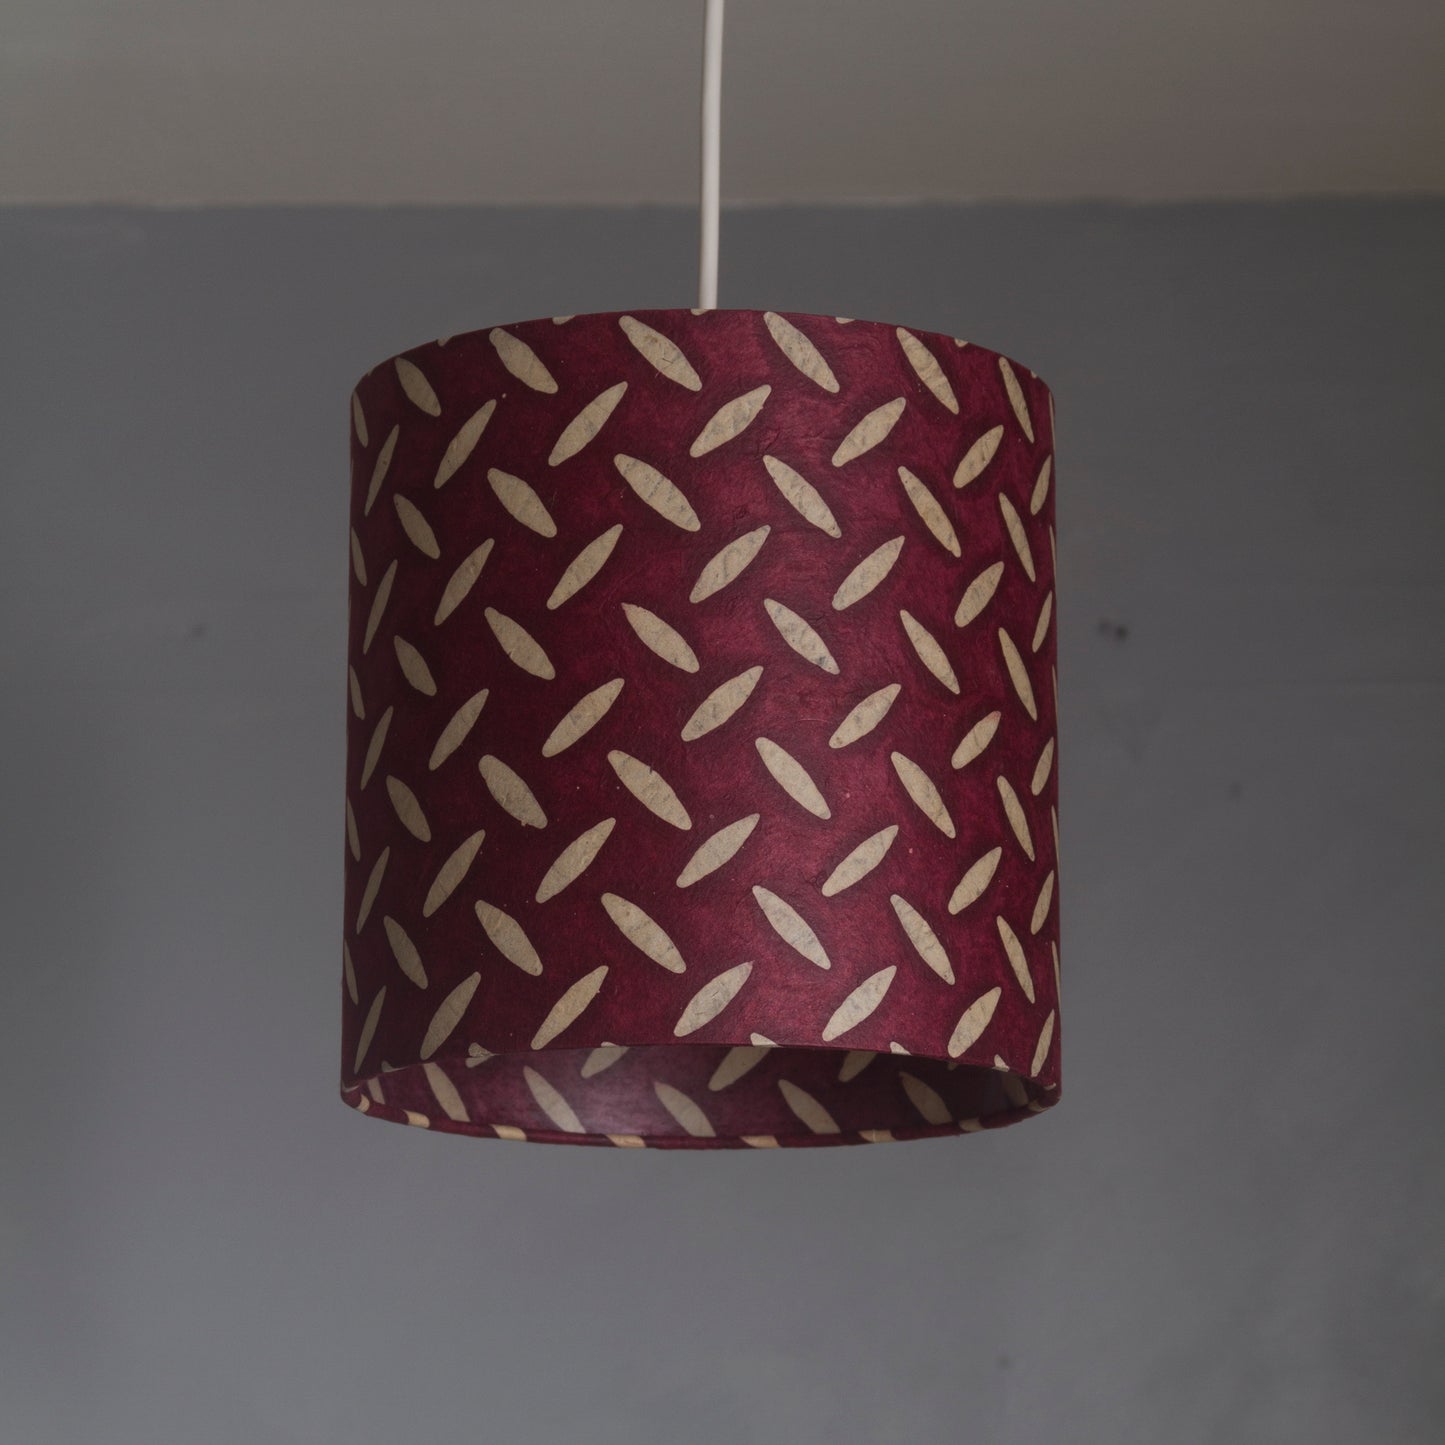 Drum Lamp Shade - P14 - Batik Tread Plate Cranberry, 30cm(d) x 30cm(h)